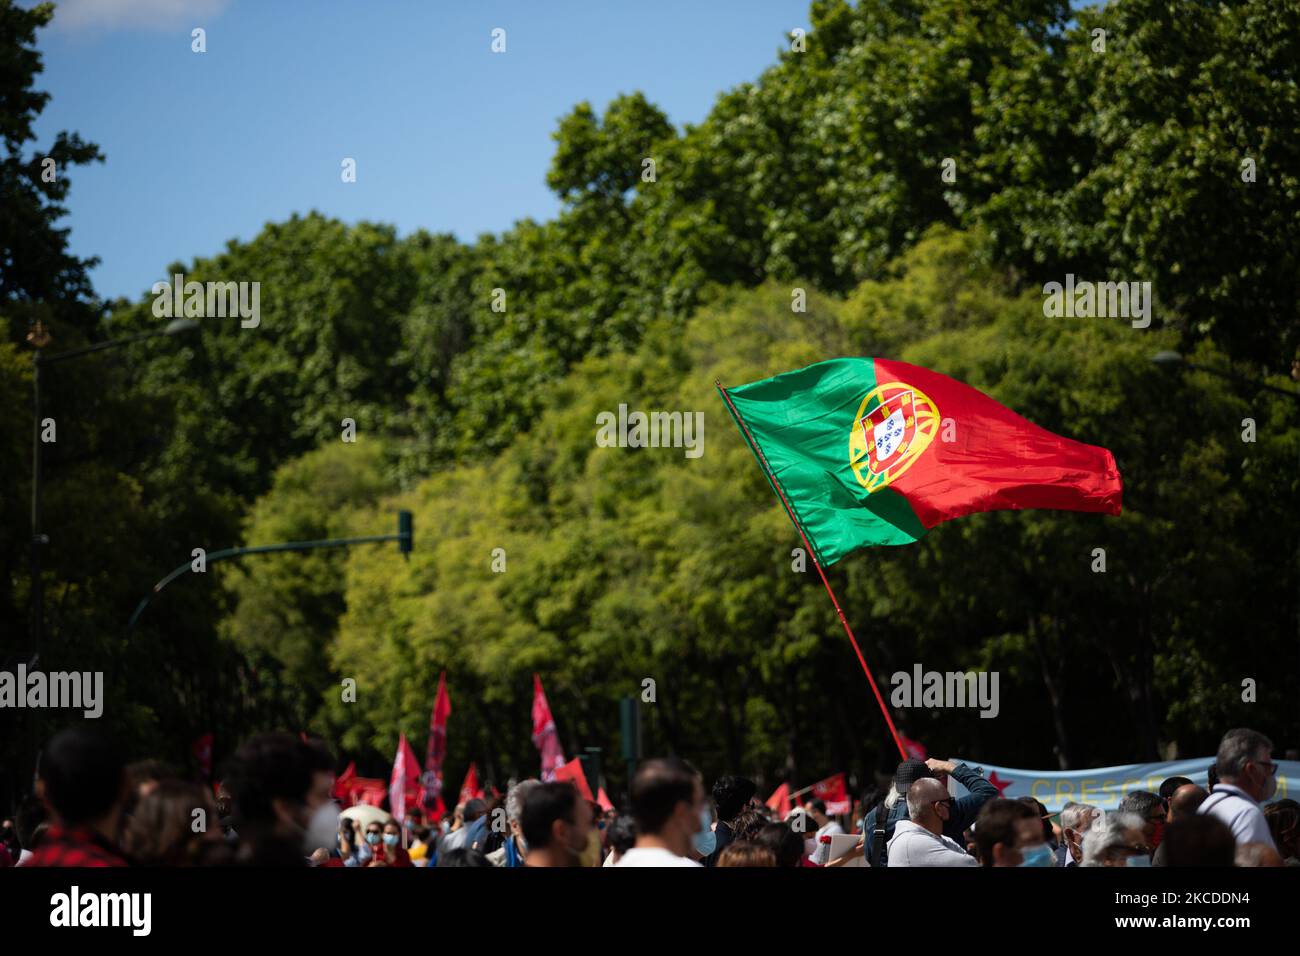 Am 25. April 2021 marschieren Menschen mit roten Nelken und der portugiesischen Flagge zum Gedenken an den Jahrestag der portugiesischen Revolution in Lissabon, Portugal. Portugal feiert ein weiteres Jahr auf der Straße über die Aprilrevolution, die die Diktatur am 25. April 1974 beendete. (Foto von Nuno Cruz/NurPhoto) Stockfoto